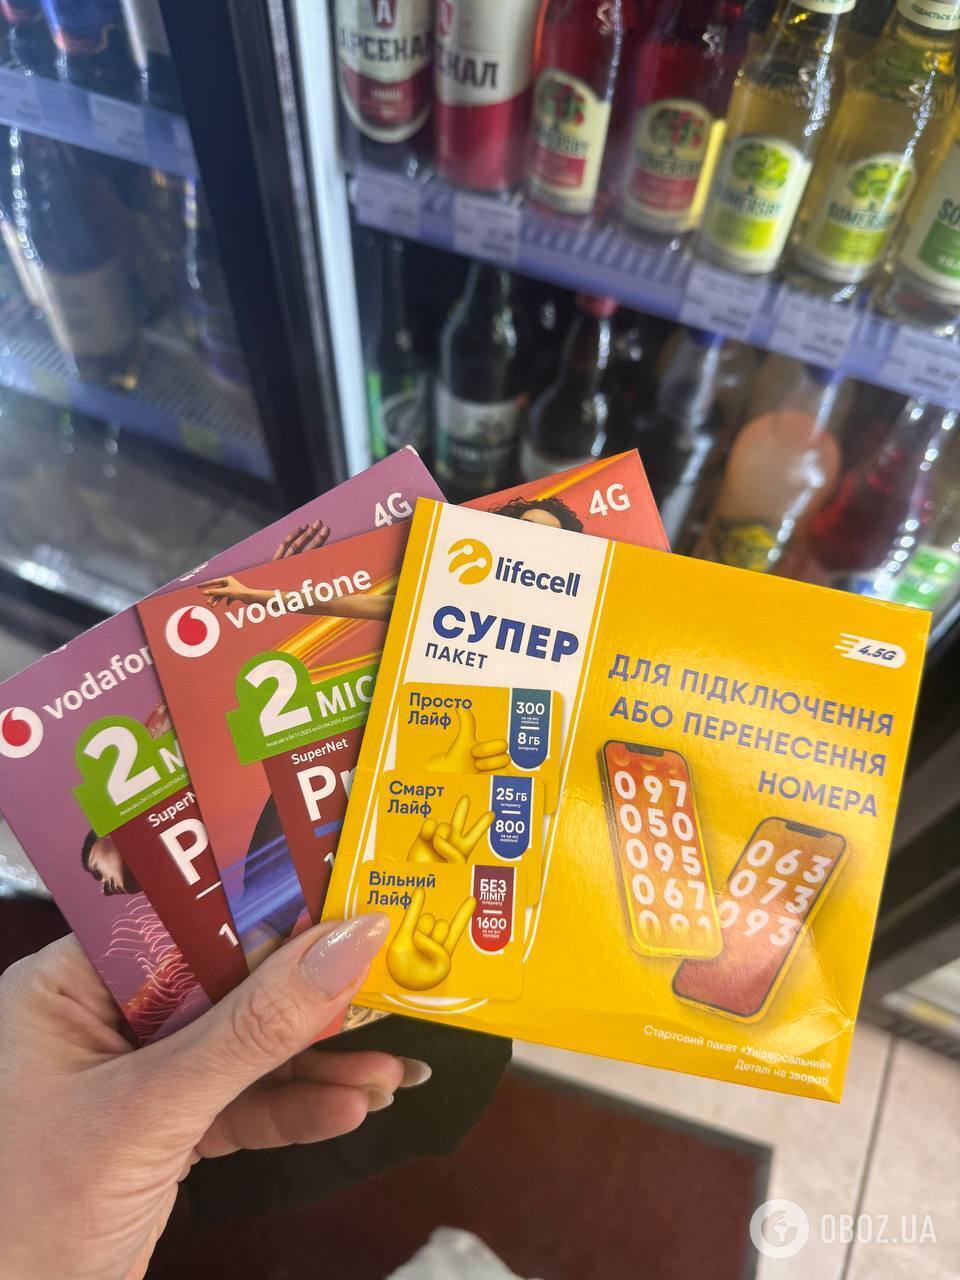 SIM-карты по-прежнему продают в обычных магазинах